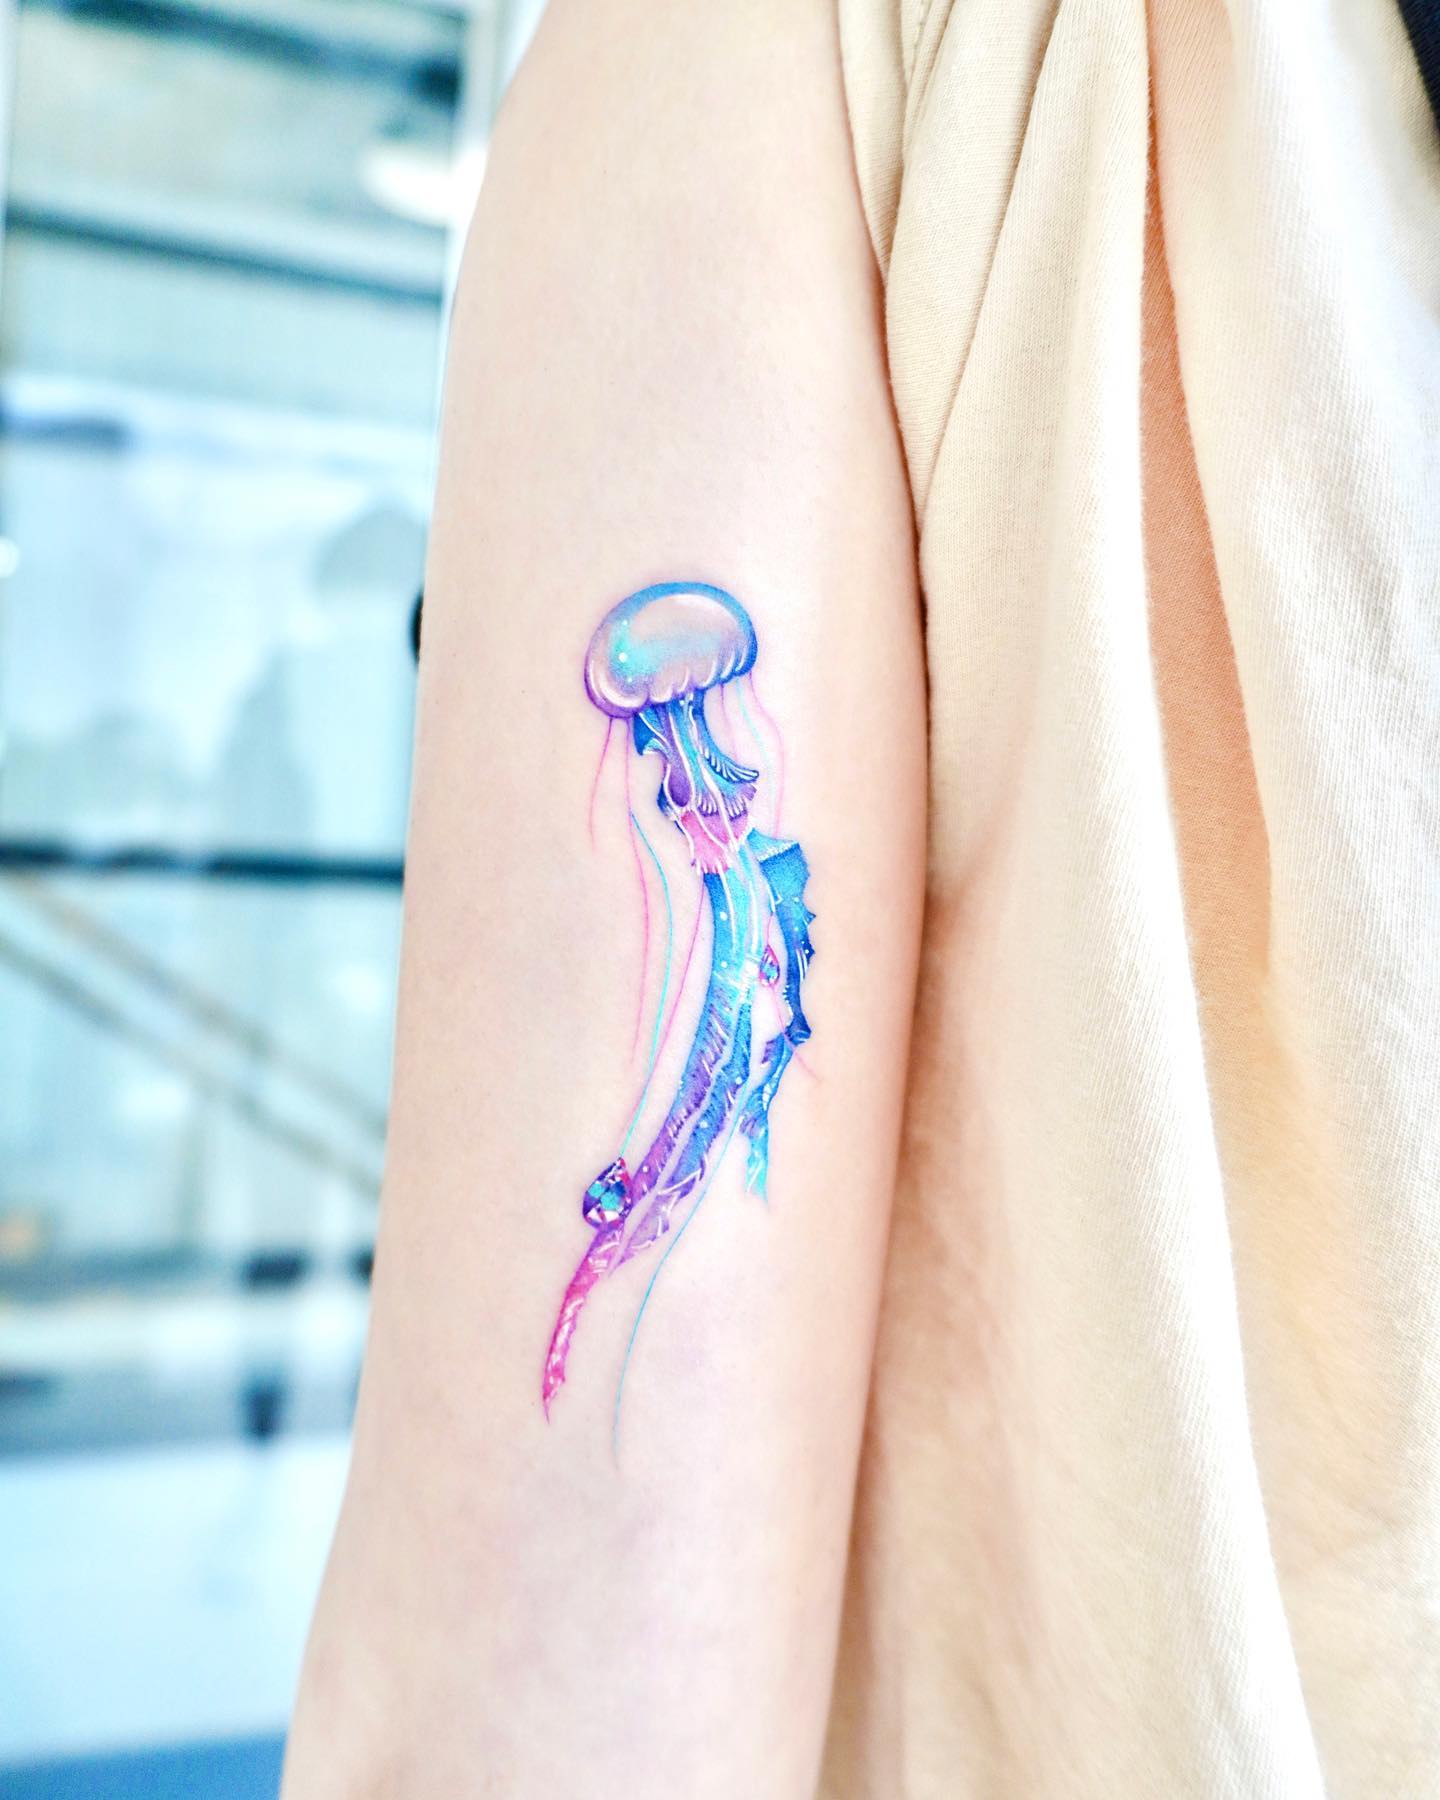 Tatuaje de medusa azul en el brazo.